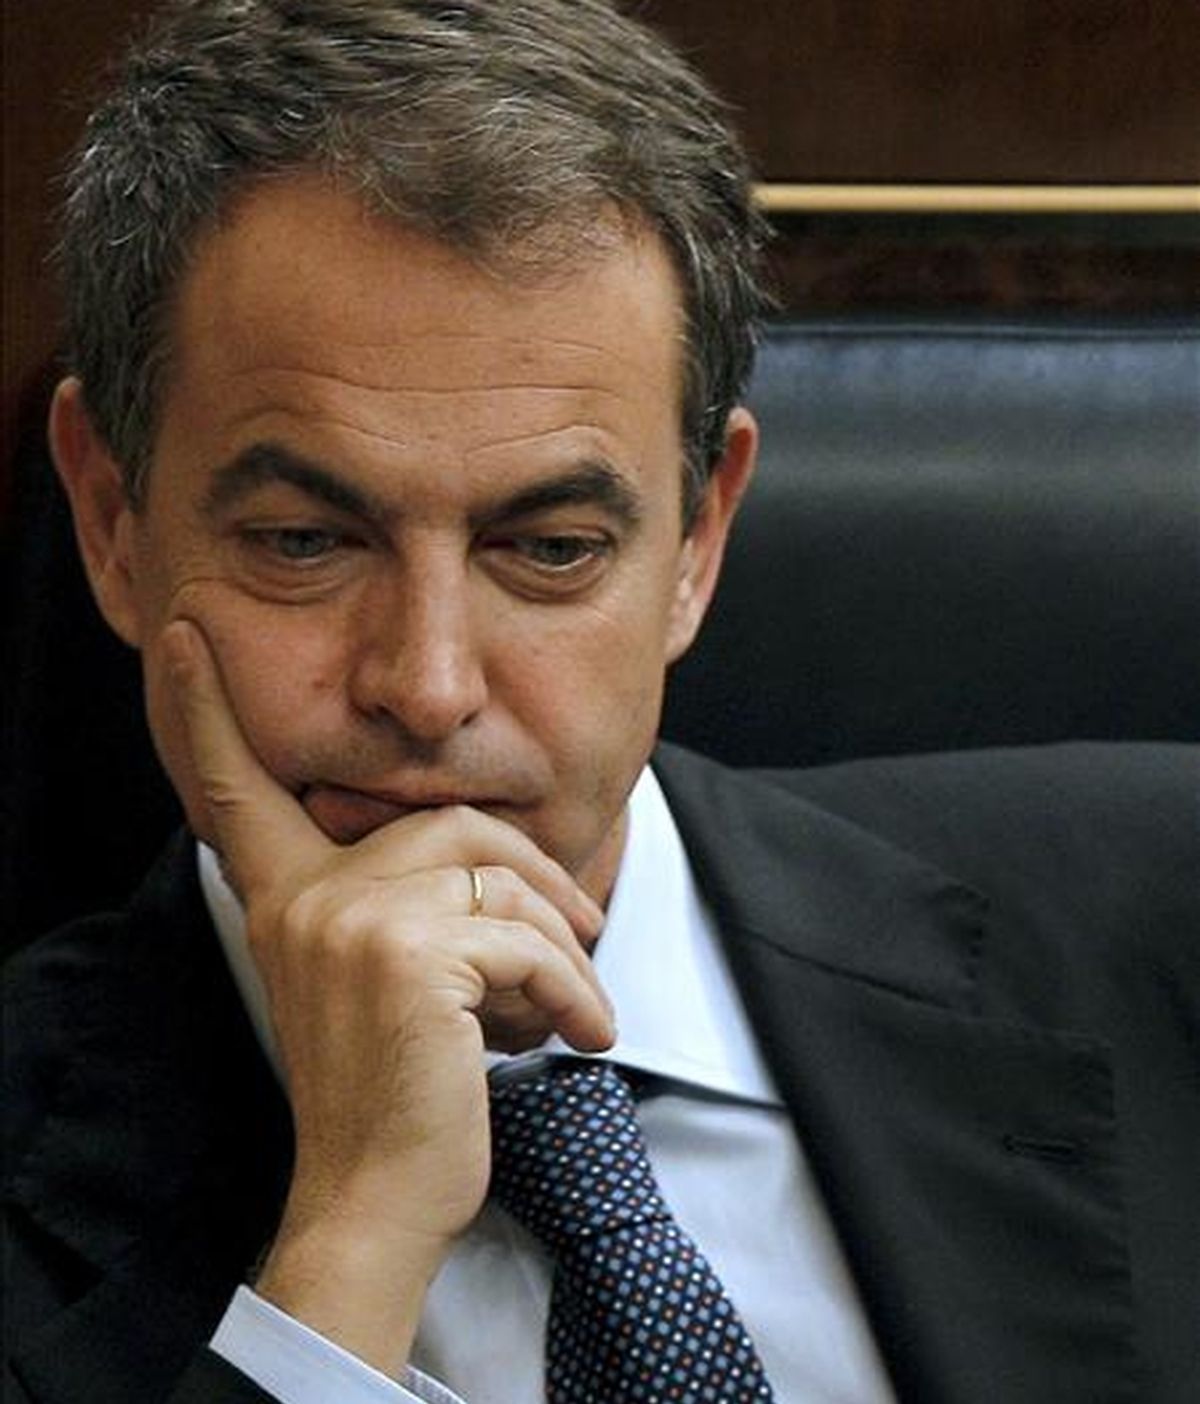 El presidente del Gobierno, José Luis Rodríguez Zapatero, durante la sesión de control al Ejecutivo celebrada en el Congreso de los Diputados. EFE/Archivo